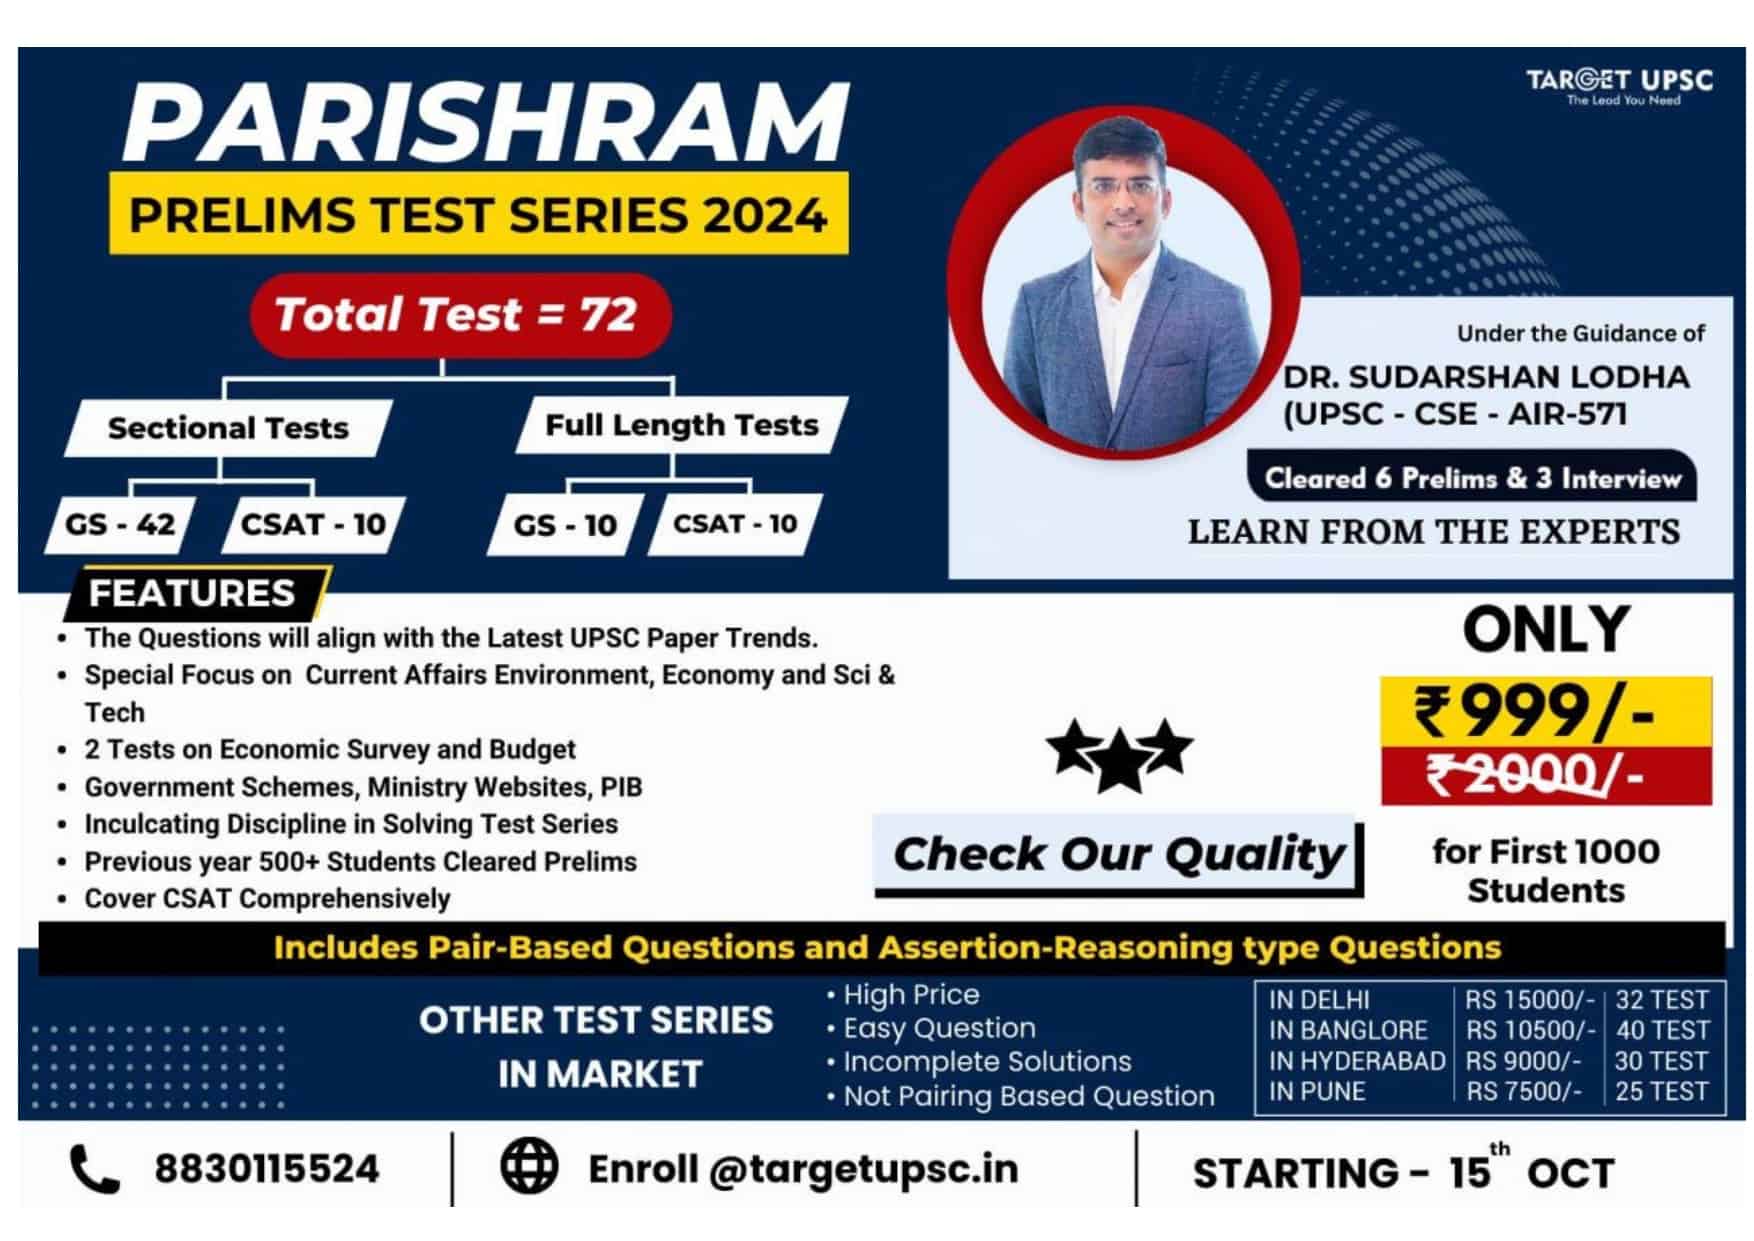 Parishram Prelims Test Series 2024 Target UPSC